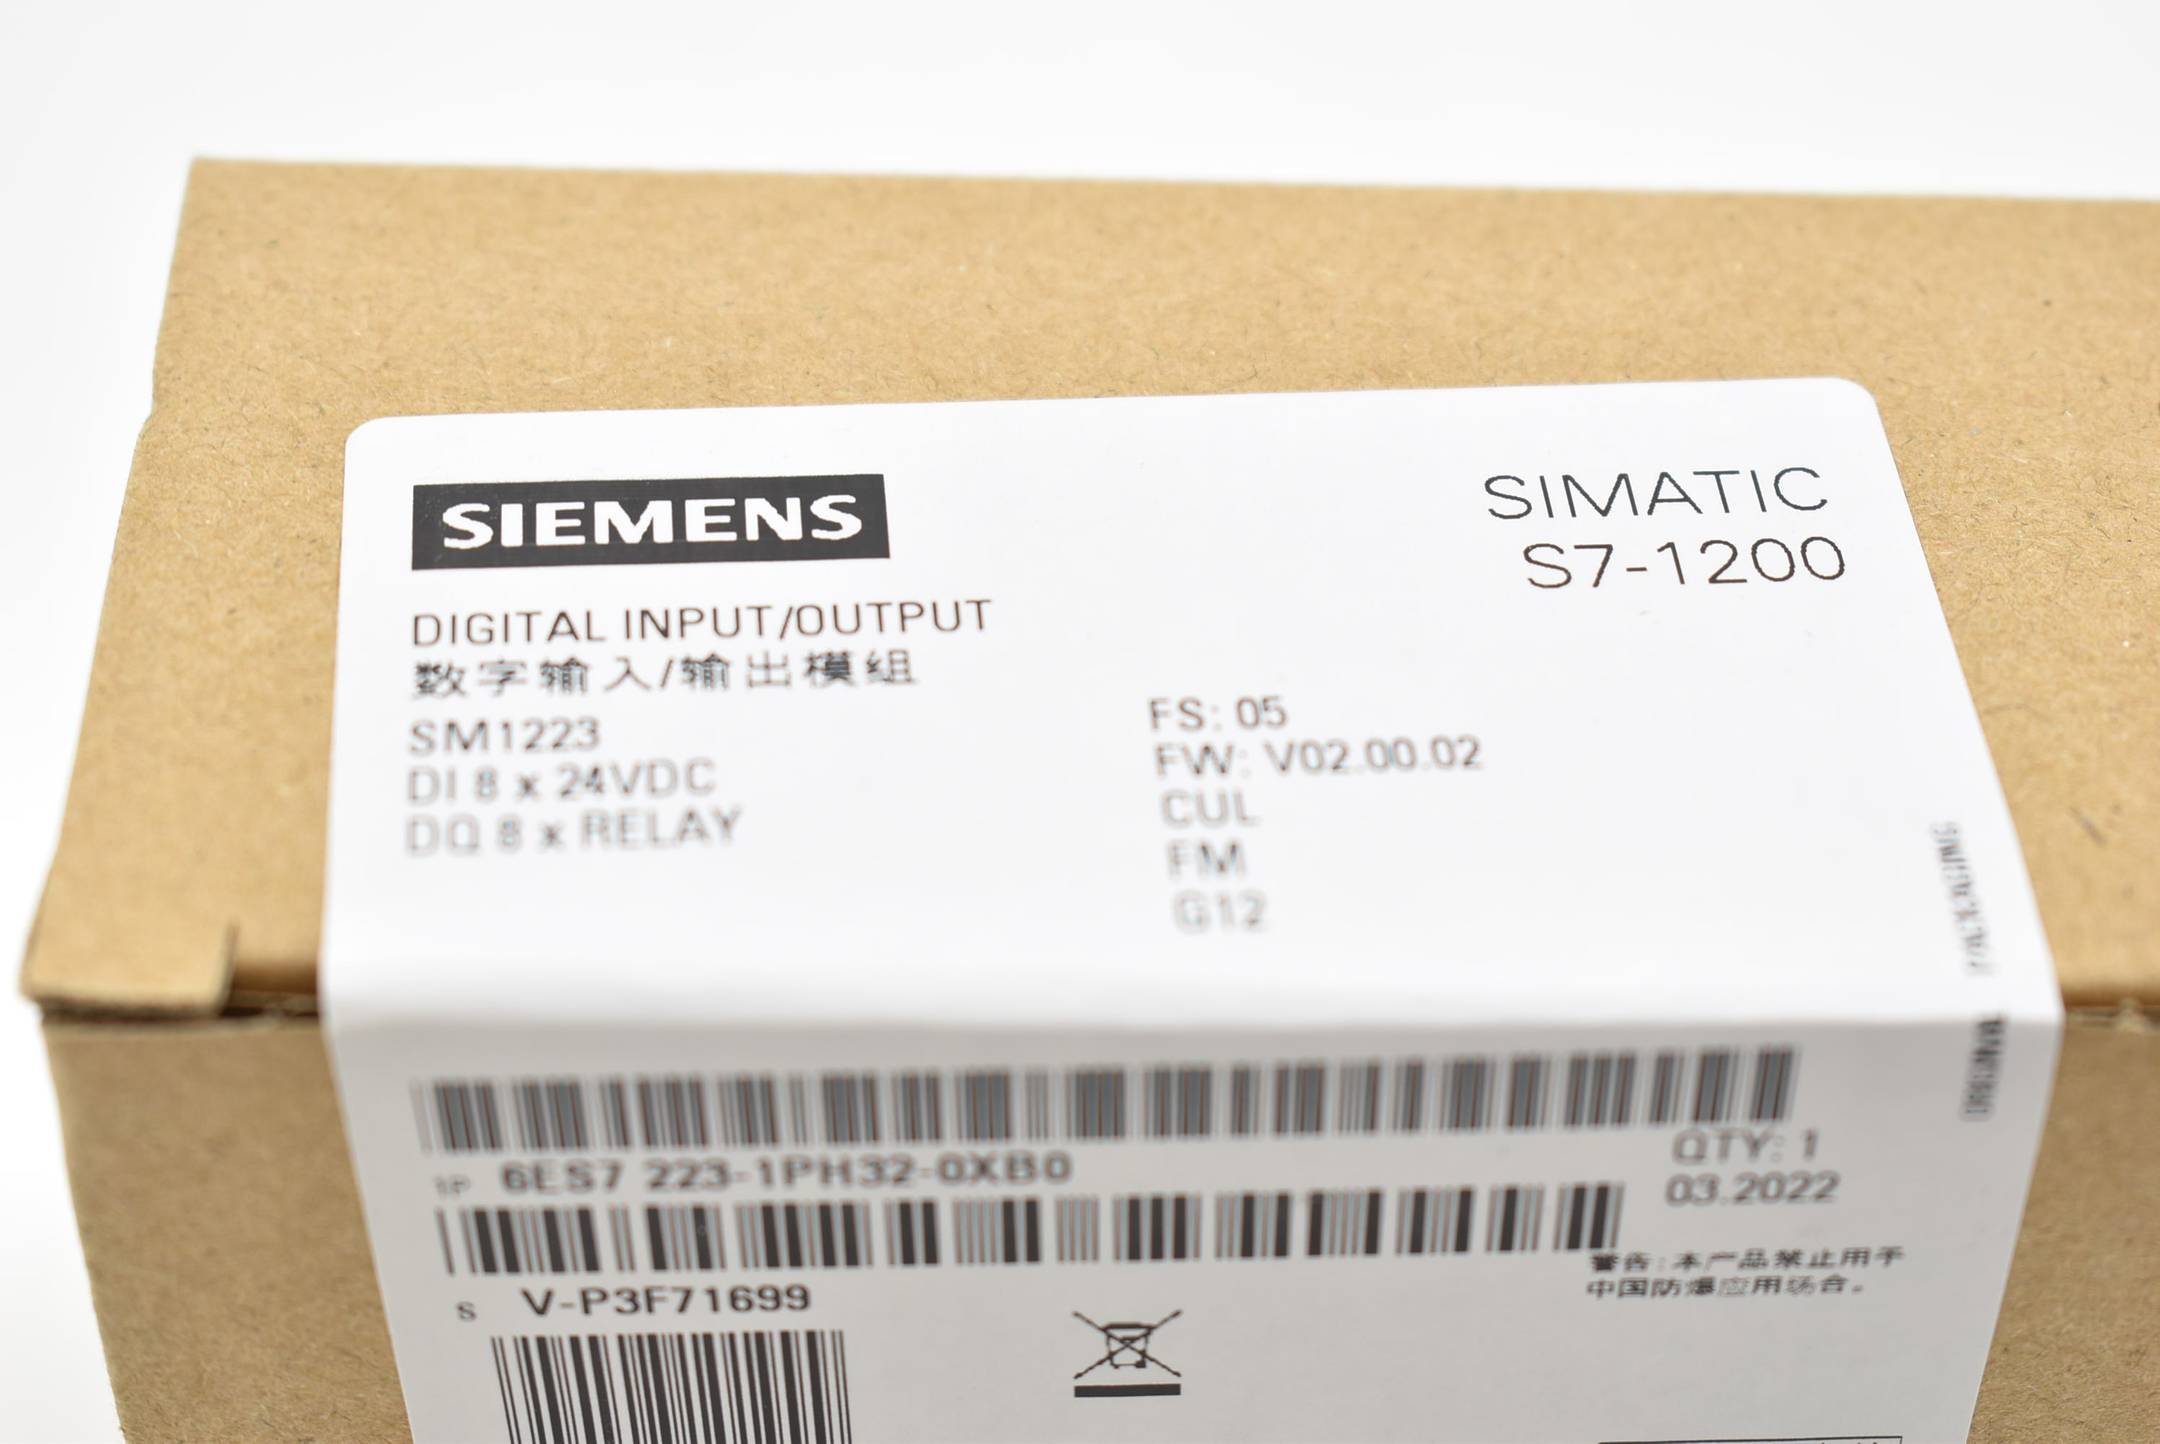 Siemens simatic S7-1200 6ES7 223-1PH32-0XB0 ( 6ES7223-1PH32-0XB0 ) FS.5